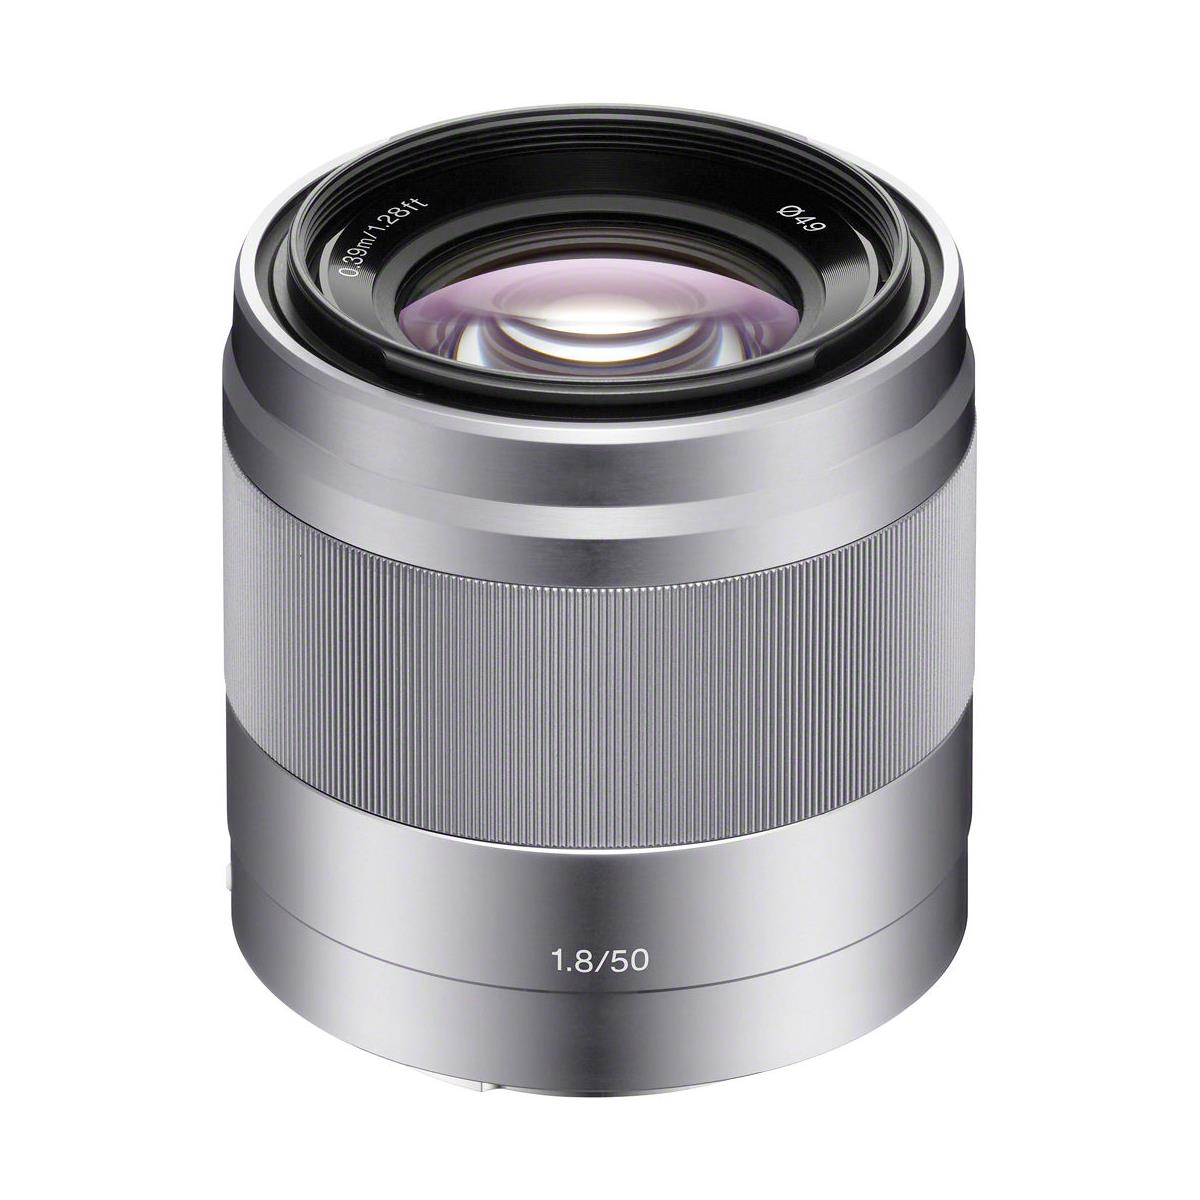 Image of Sony E 50mm f/1.8 OSS Lens for Sony E